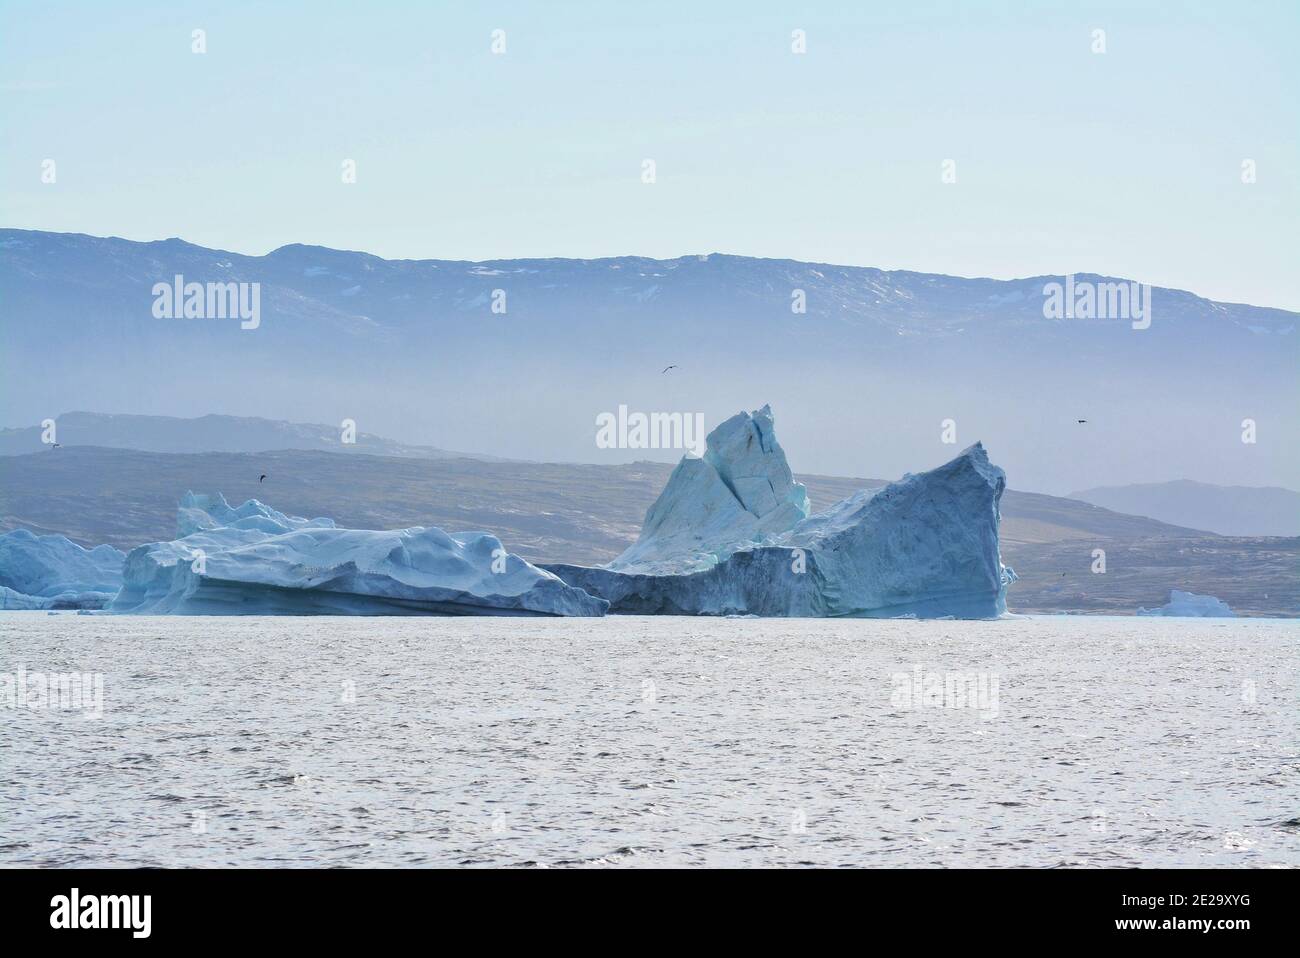 Disko Bay, Grönland - Juli - Bootsfahrt am Morgen über das arktische Meer - Baffin Bay - kalte und frische Luft und große schöne Eisberge, ruhige Momente Stockfoto